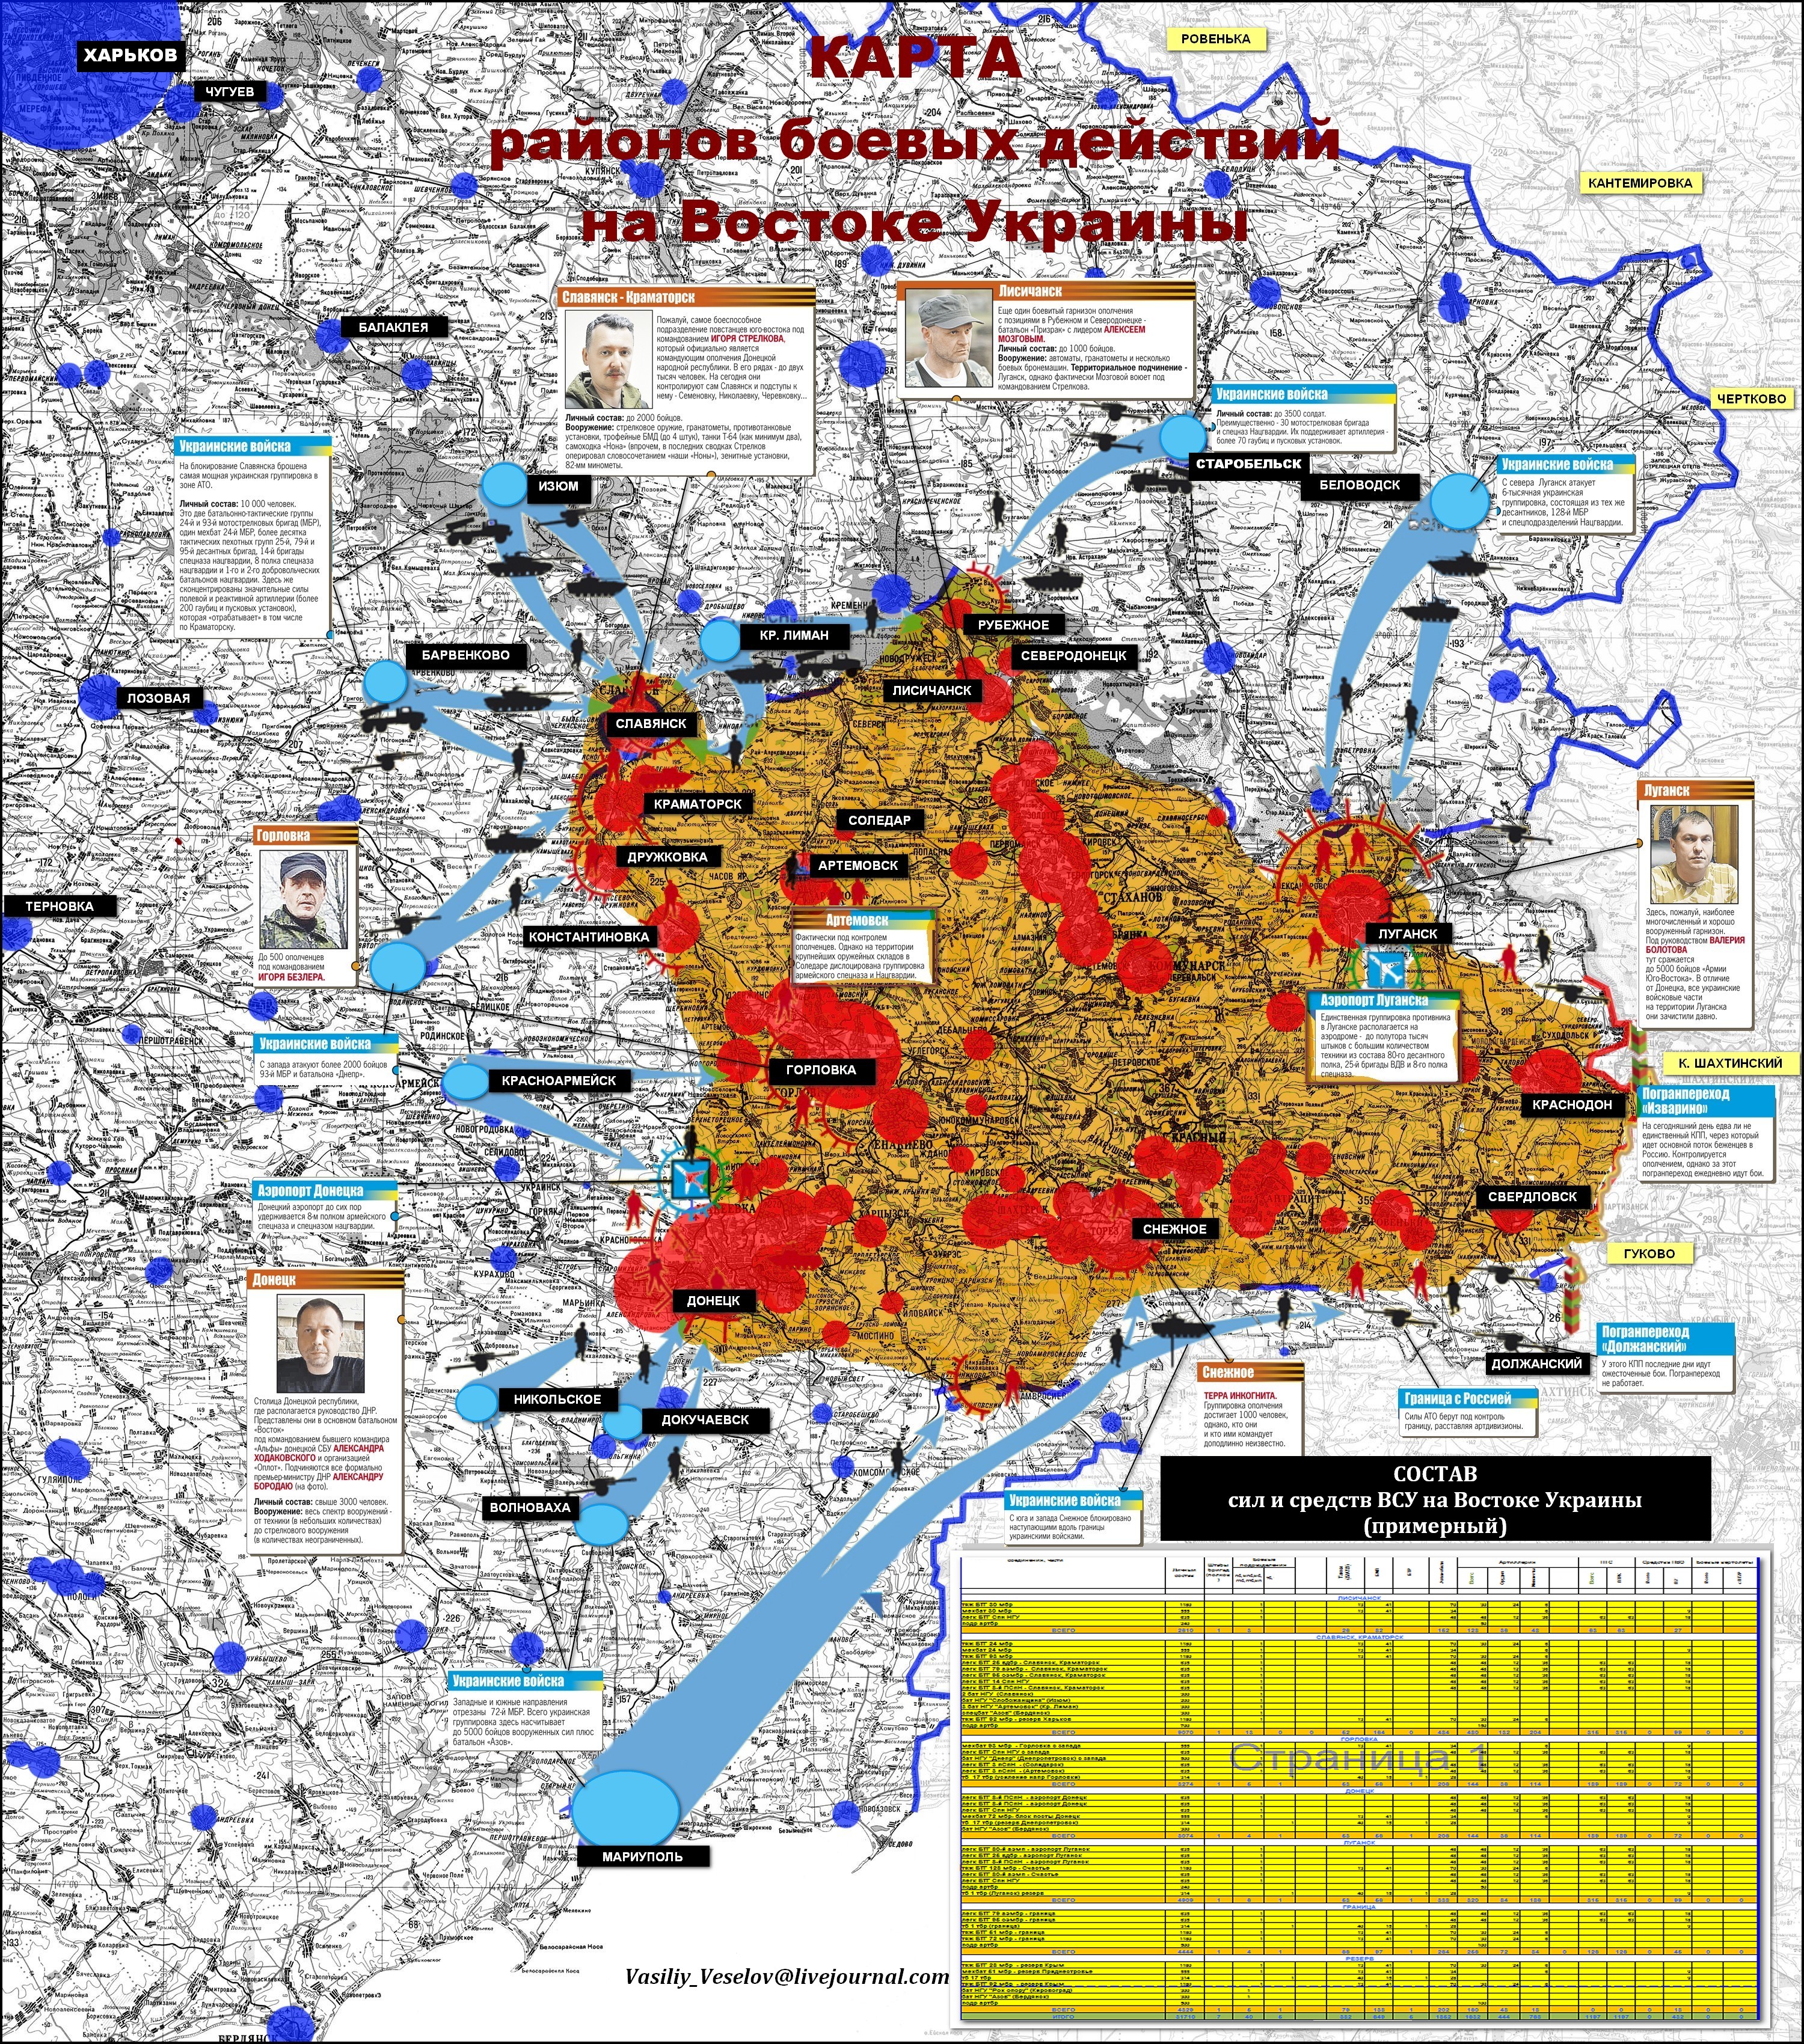 Карта украинского конфликта